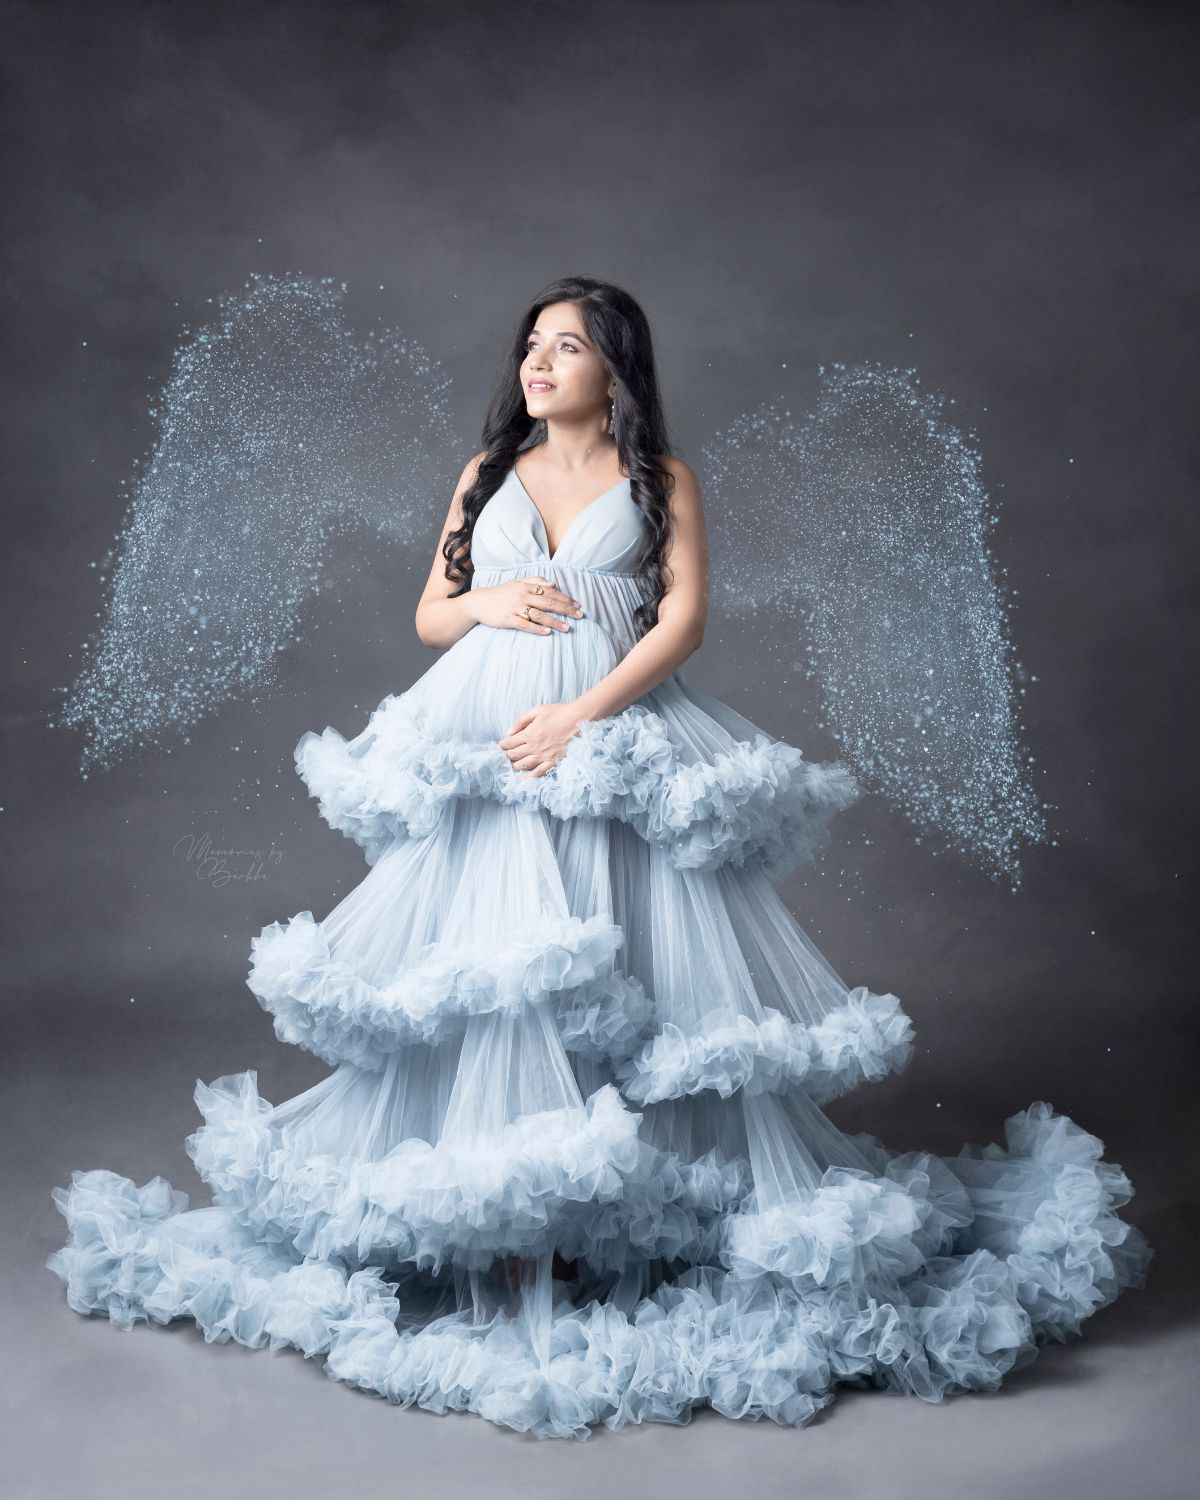 Elegant Maternity Photoshoot Dress Ideas to Embrace